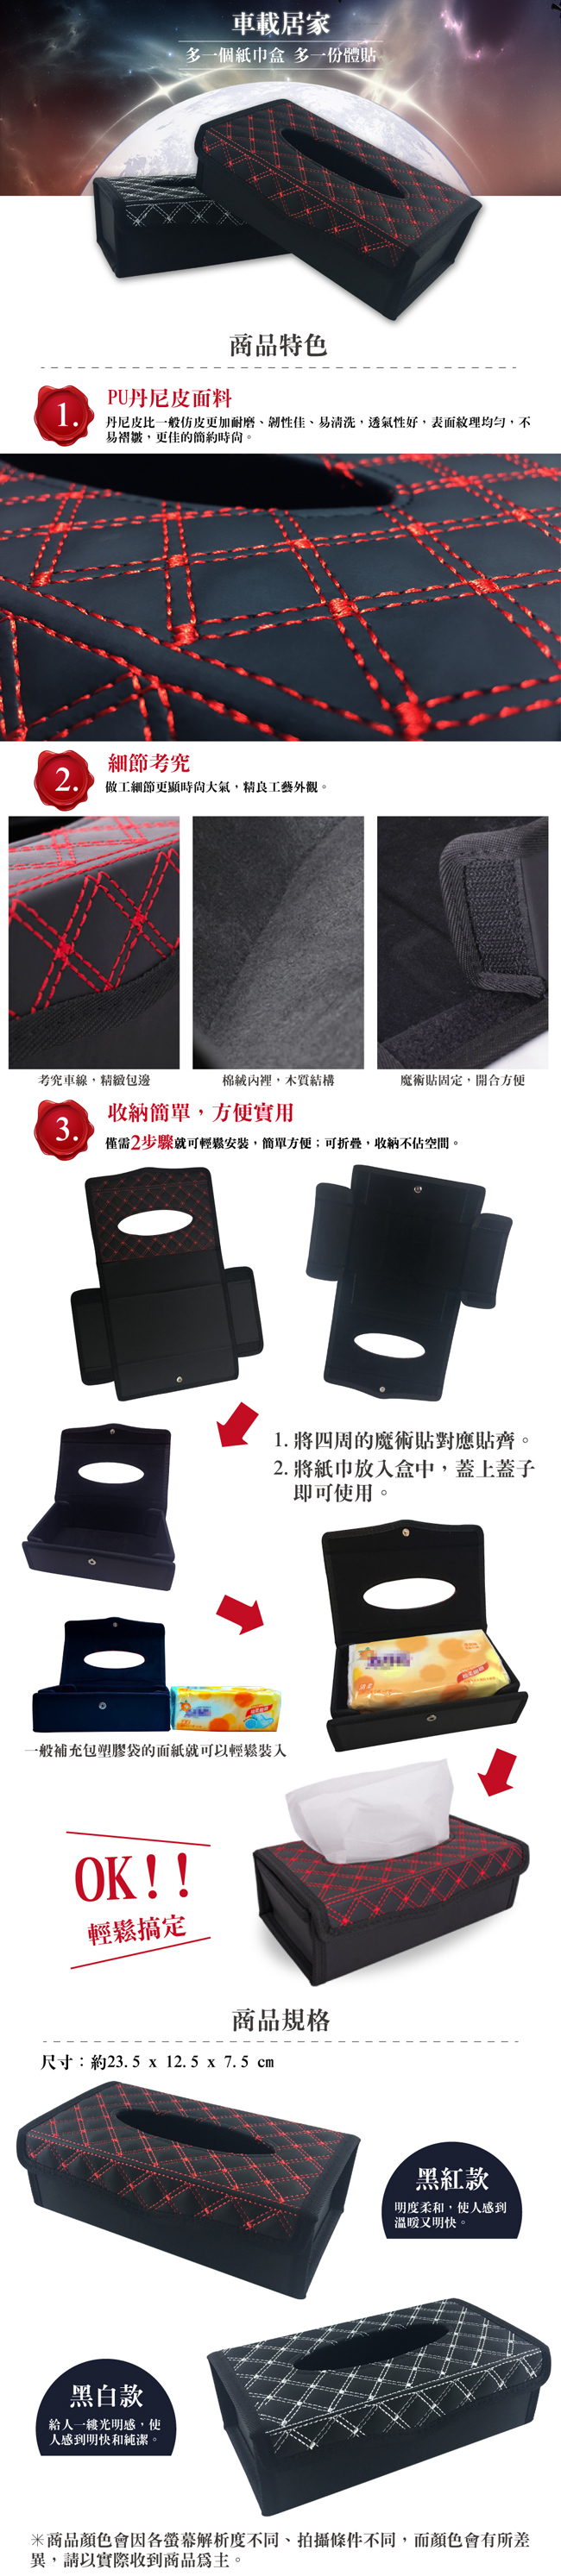 【車的背包】磁吸式面紙盒套組(多功能強力磁鐵+面紙盒)